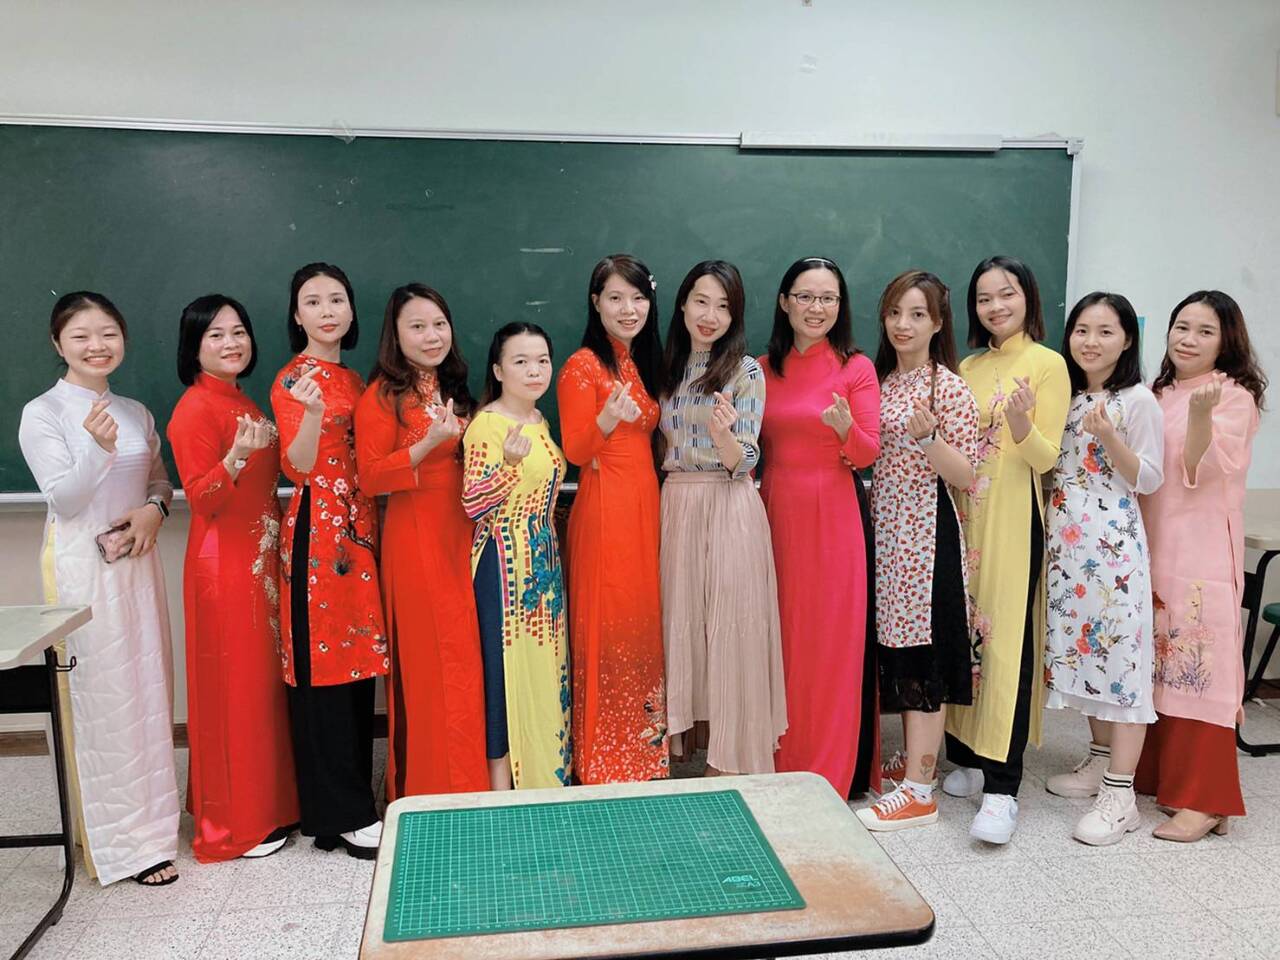 移民工讀大學 台灣越裔專班報名倒數最後一週